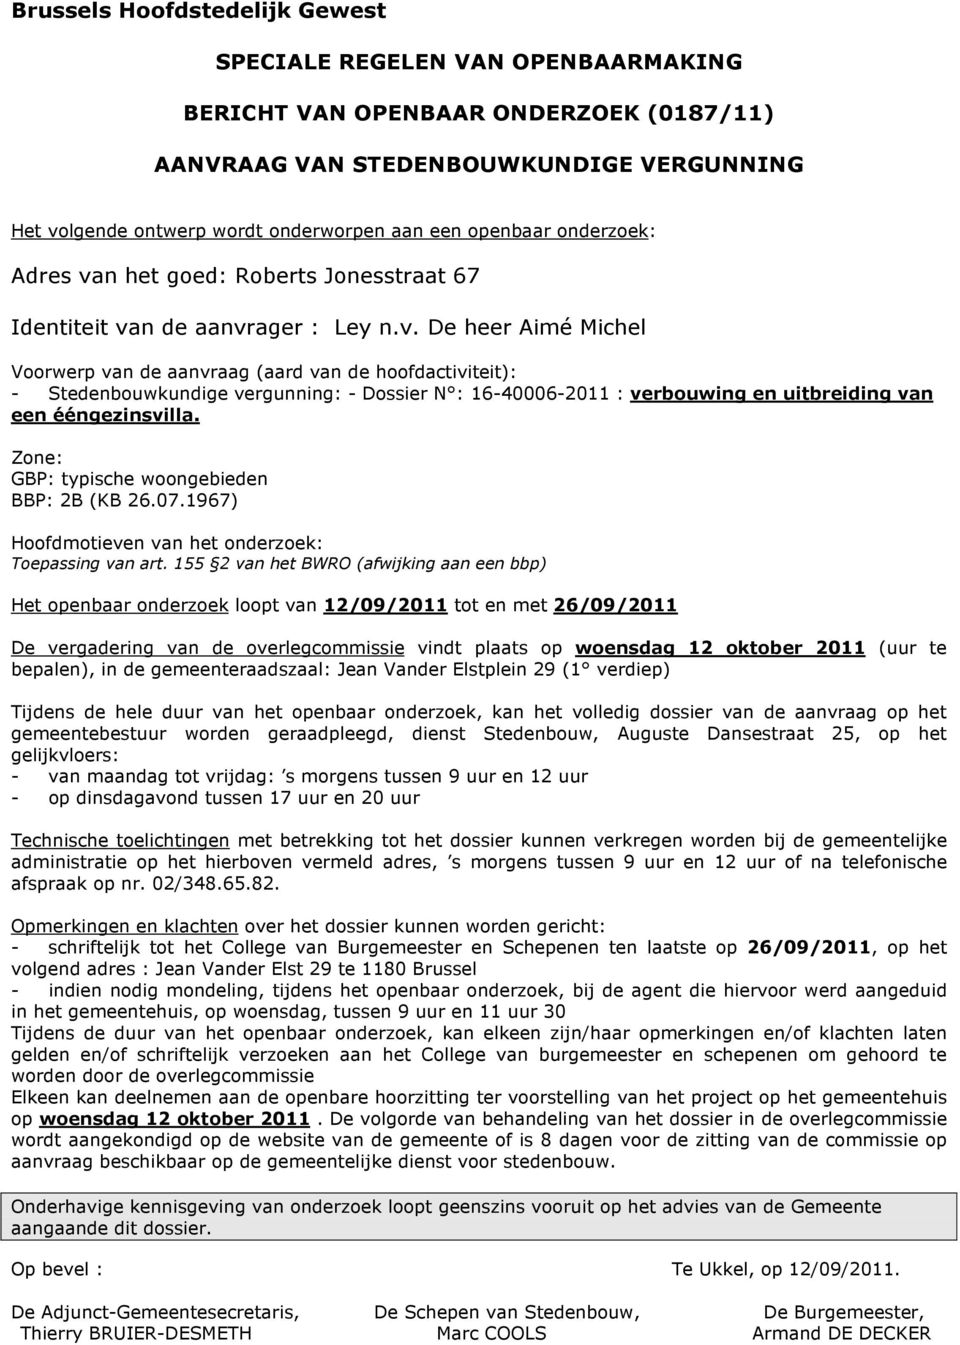 155 2 van het BWRO (afwijking aan een bbp) De vergadering van de overlegcommissie vindt plaats op woensdag 12 oktober 2011 (uur te bepalen), in de gemeenteraadszaal: Jean Vander Elstplein 29 (1